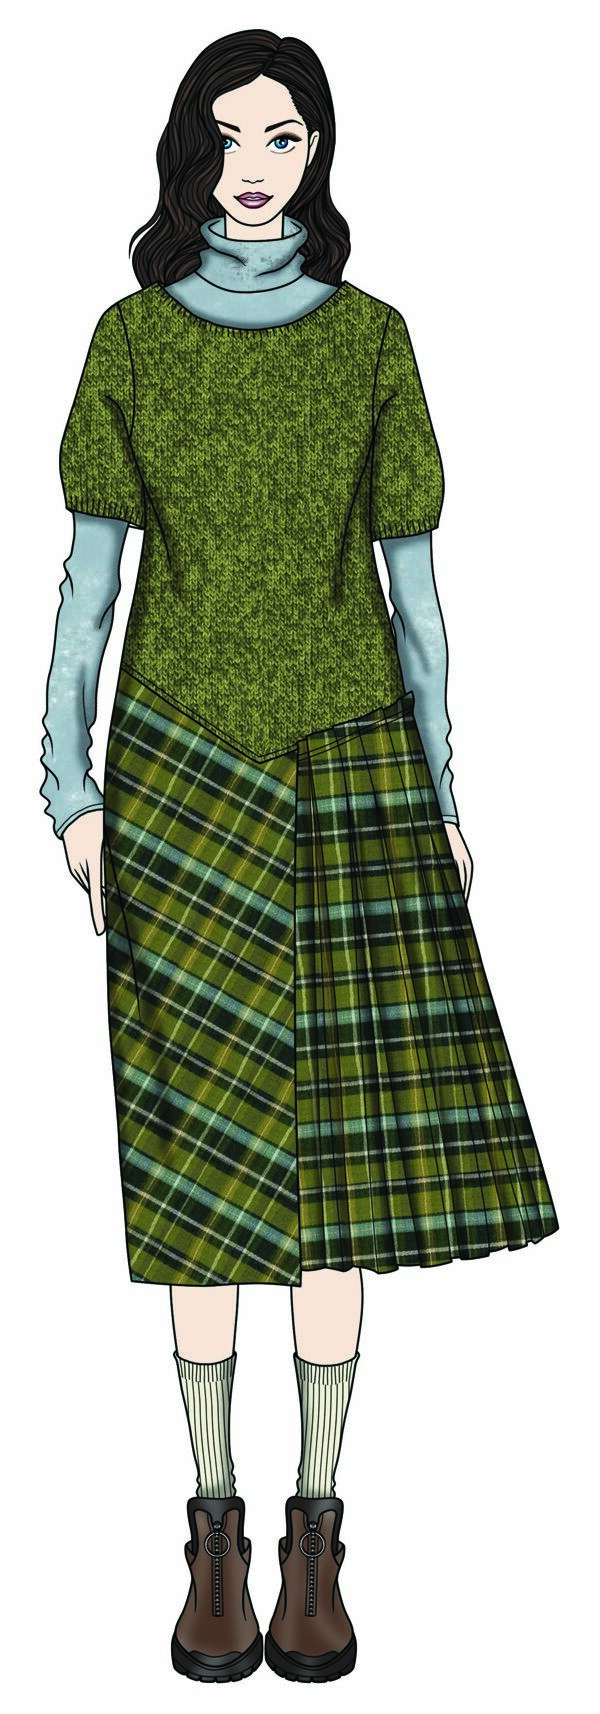 温婉土绿色短袖毛衣女装服装效果图